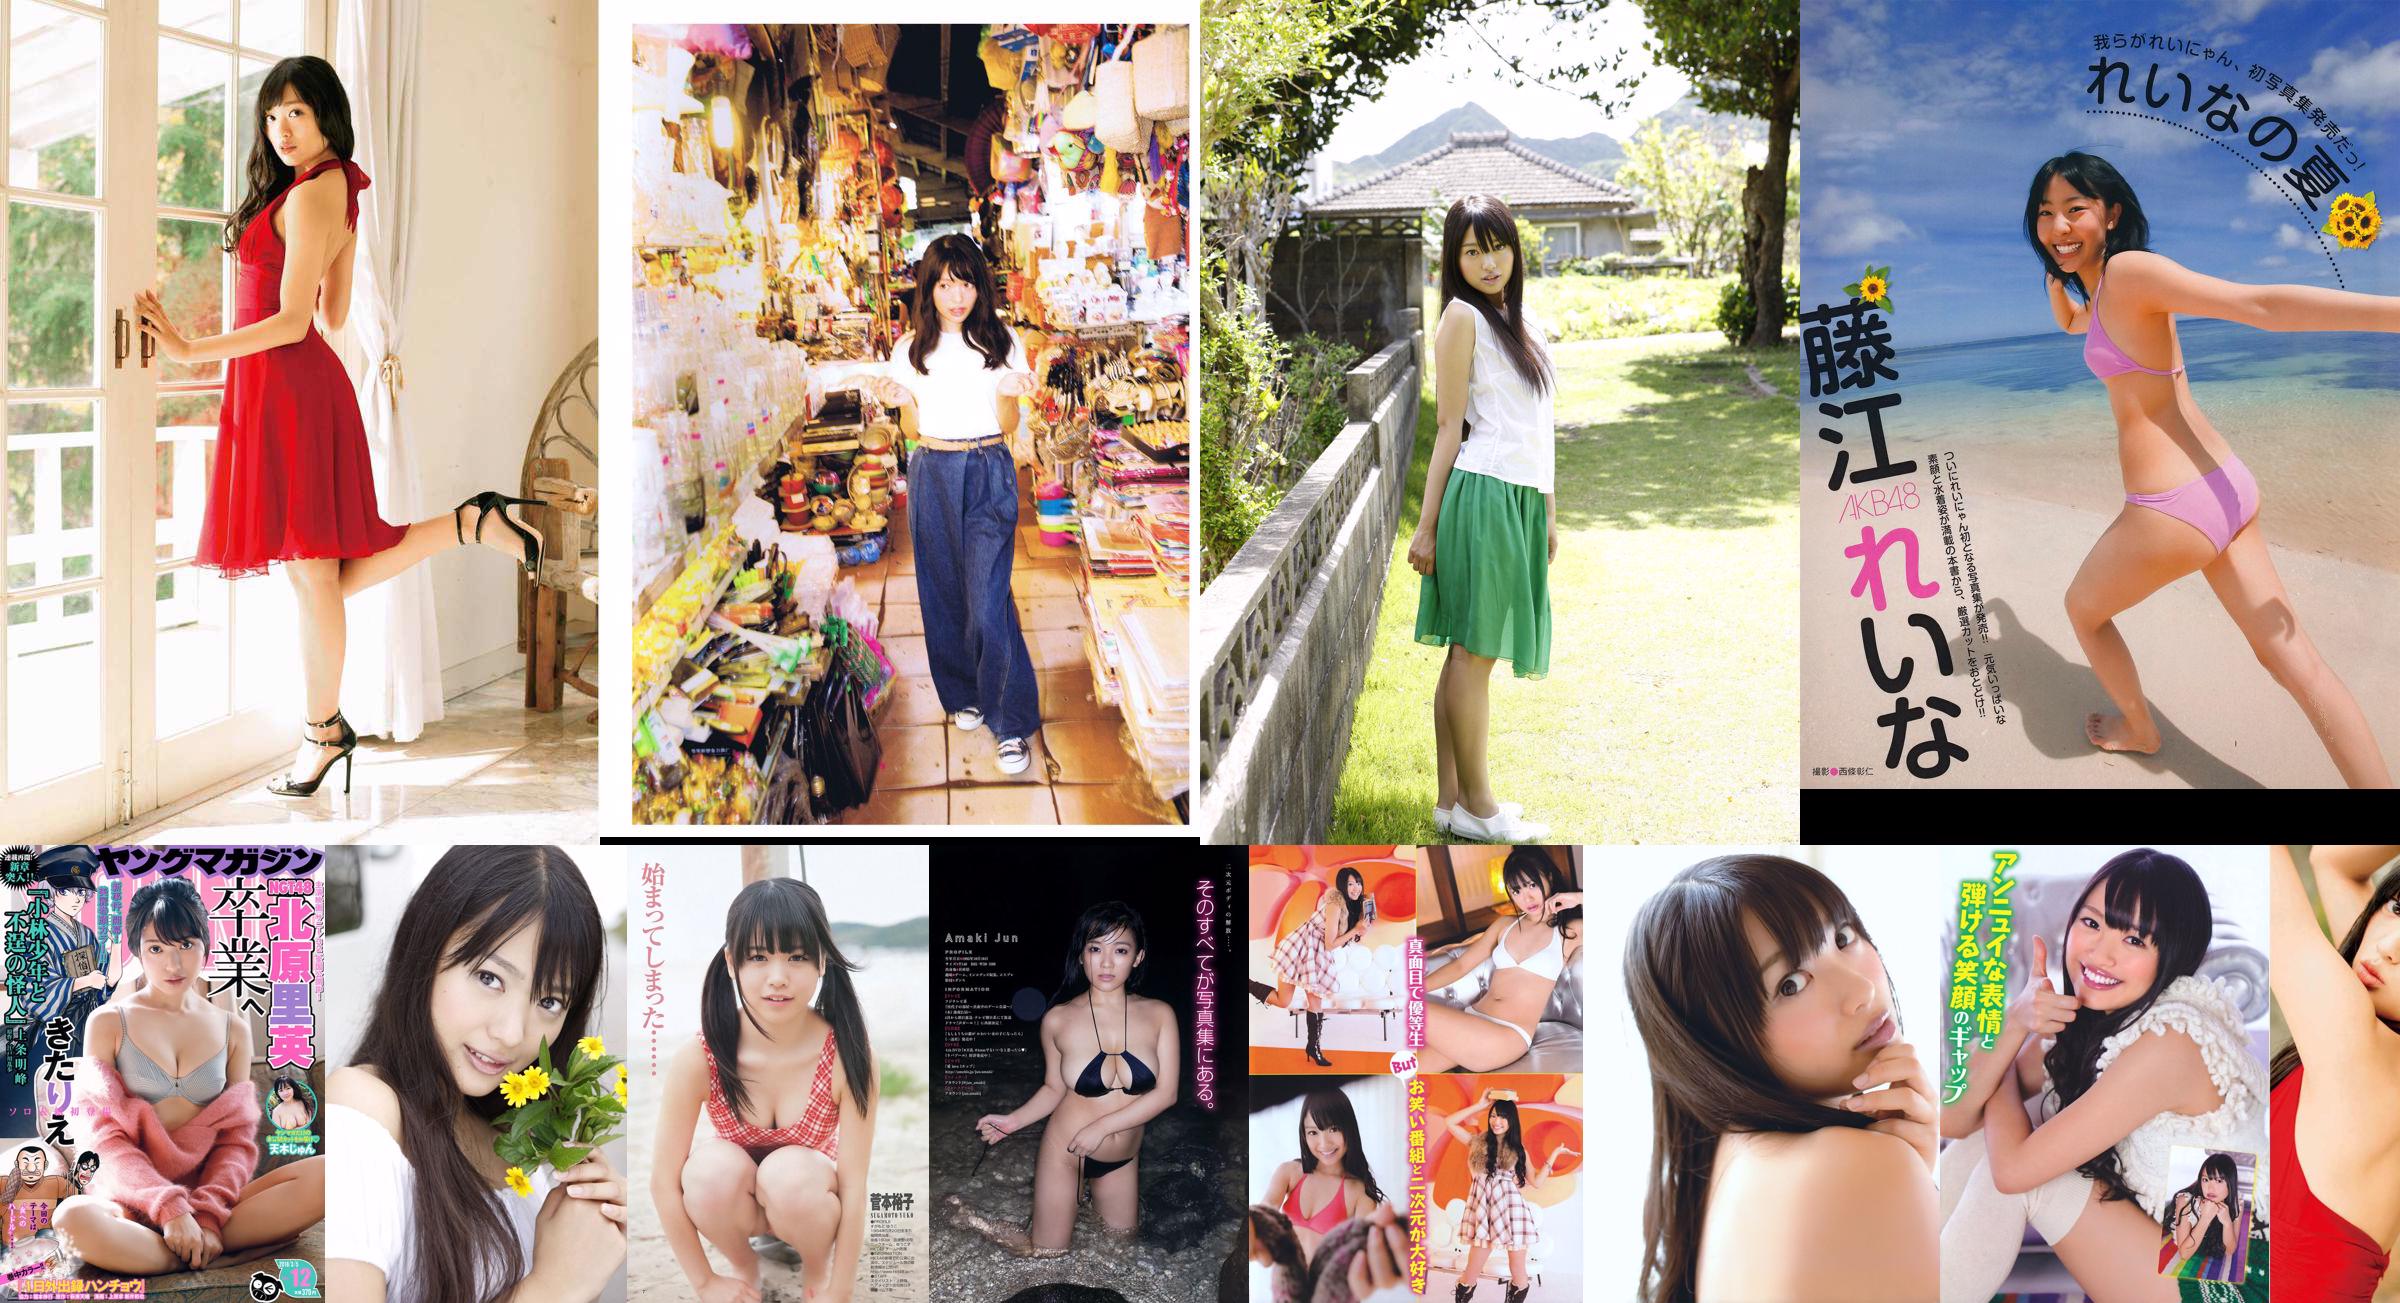 [EX Taishu] Rie Kitahara Serina KONAN Yumi Fujikoso 2011 Nr. 08 Foto No.25c49c Seite 3